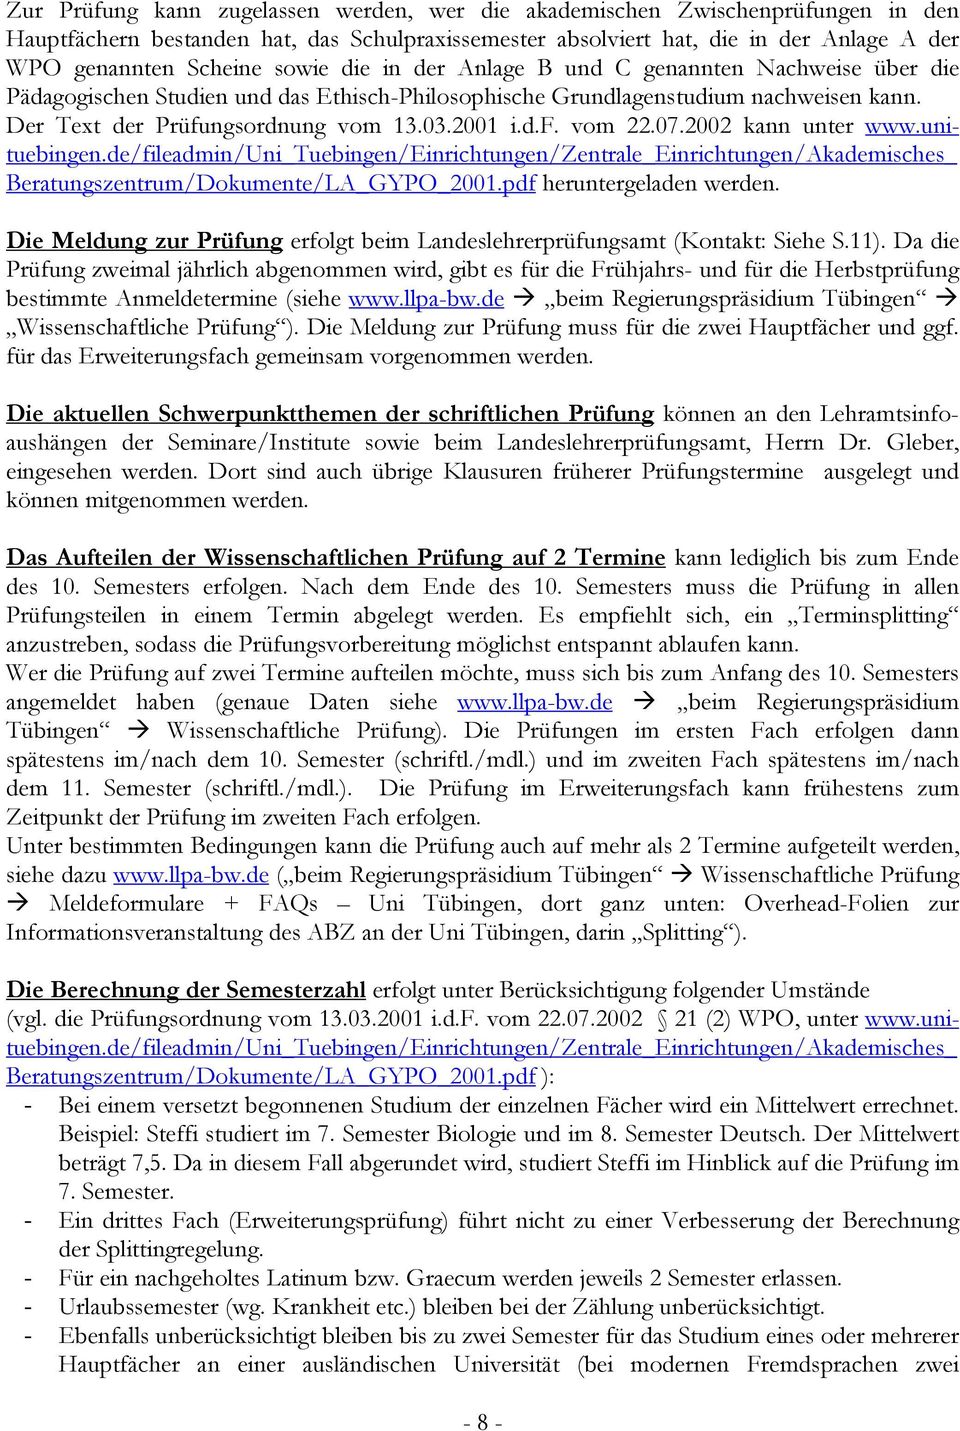 07.2002 kann unter www.unituebingen.de/fileadmin/uni_tuebingen/einrichtungen/zentrale_einrichtungen/akademisches_ Beratungszentrum/Dokumente/LA_GYPO_2001.pdf heruntergeladen werden.